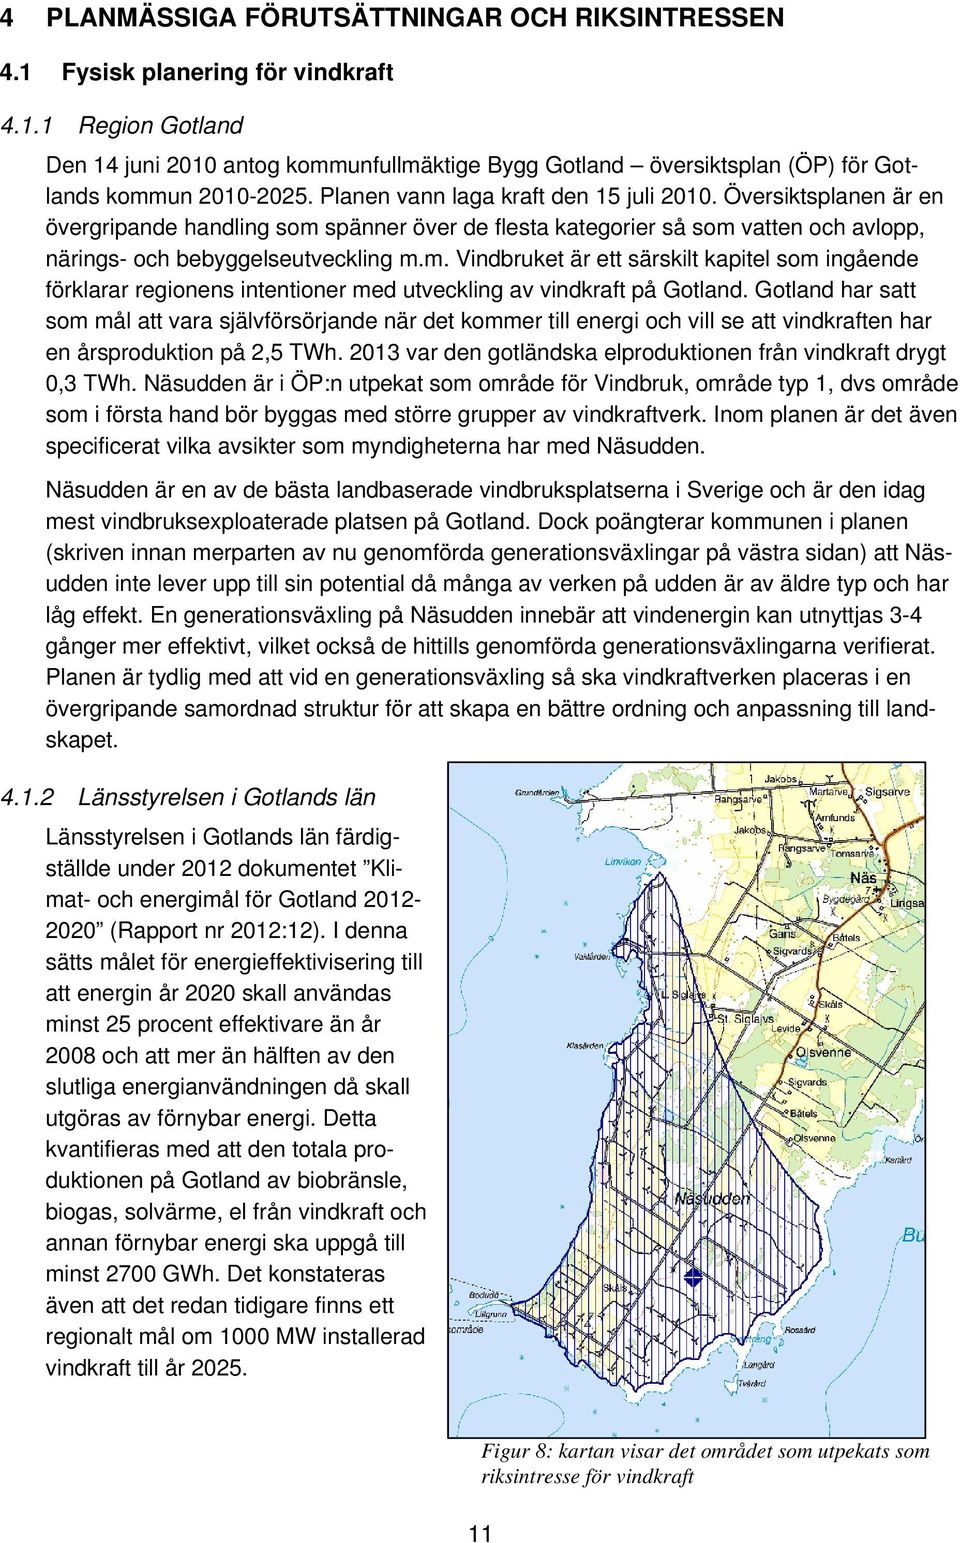 spänner över de flesta kategorier så som vatten och avlopp, närings- och bebyggelseutveckling m.m. Vindbruket är ett särskilt kapitel som ingående förklarar regionens intentioner med utveckling av vindkraft på Gotland.